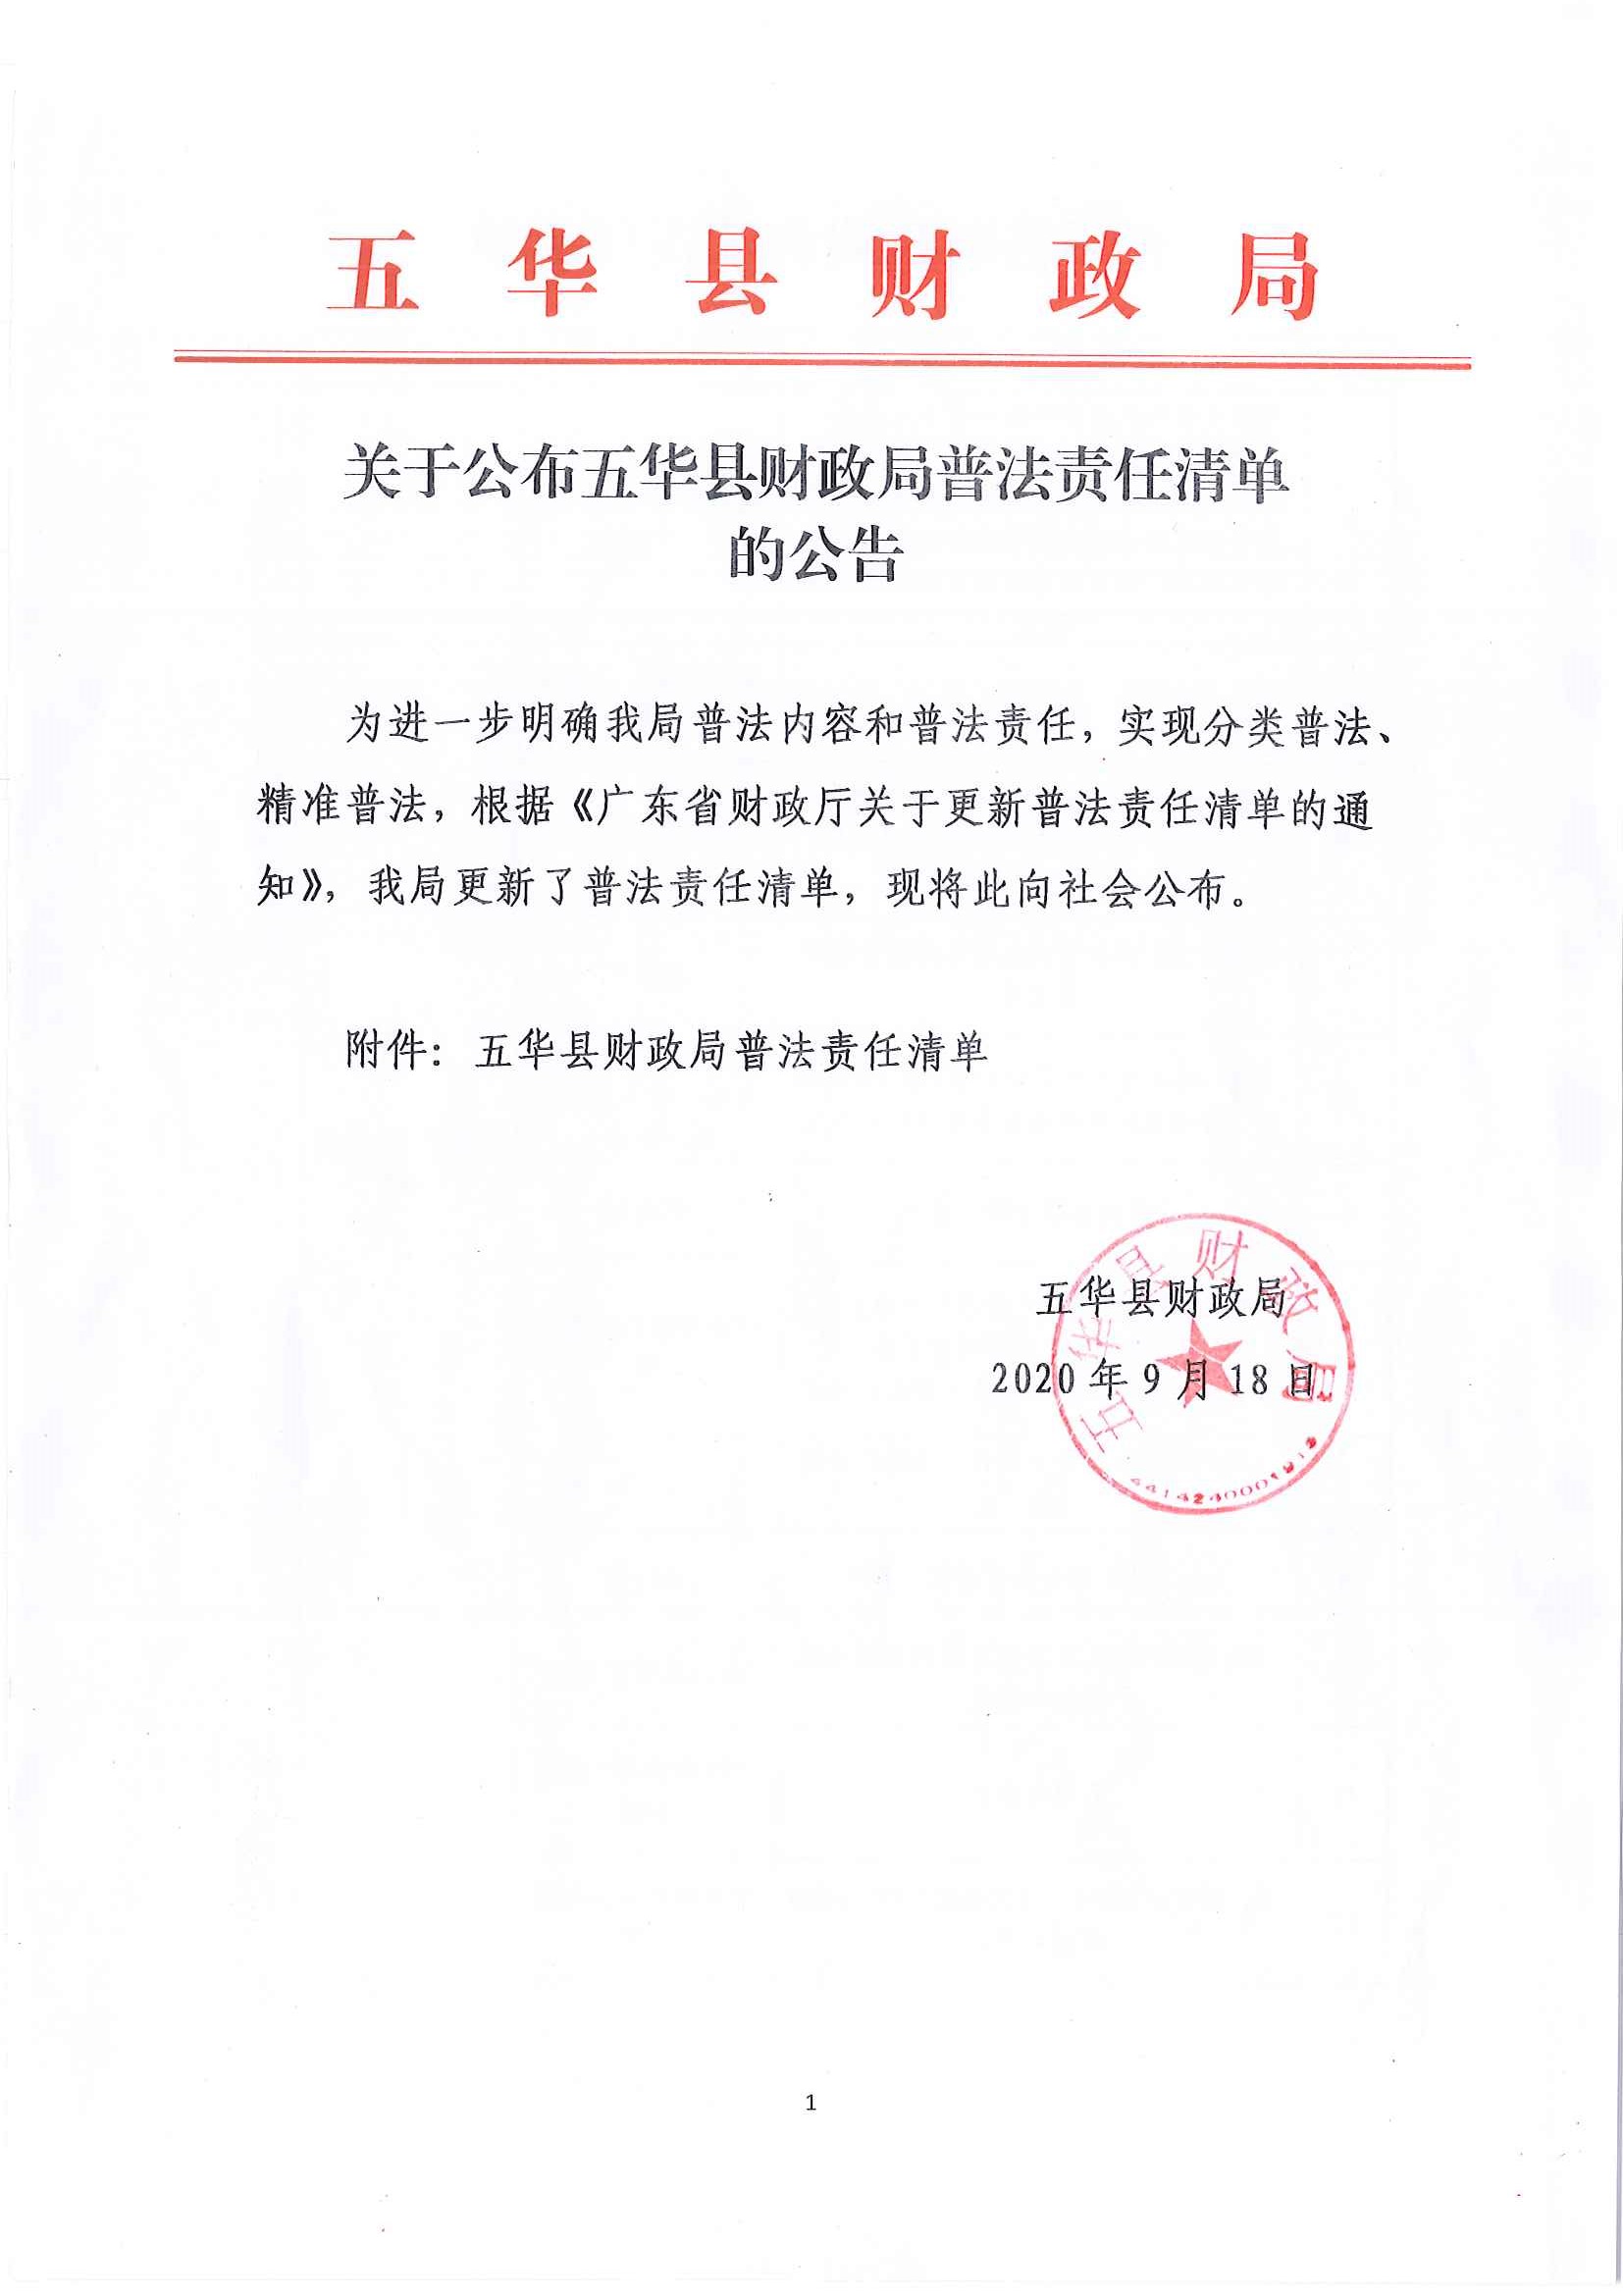 关于公布五华县财政局普法责任清单的公告_页面_1.jpg